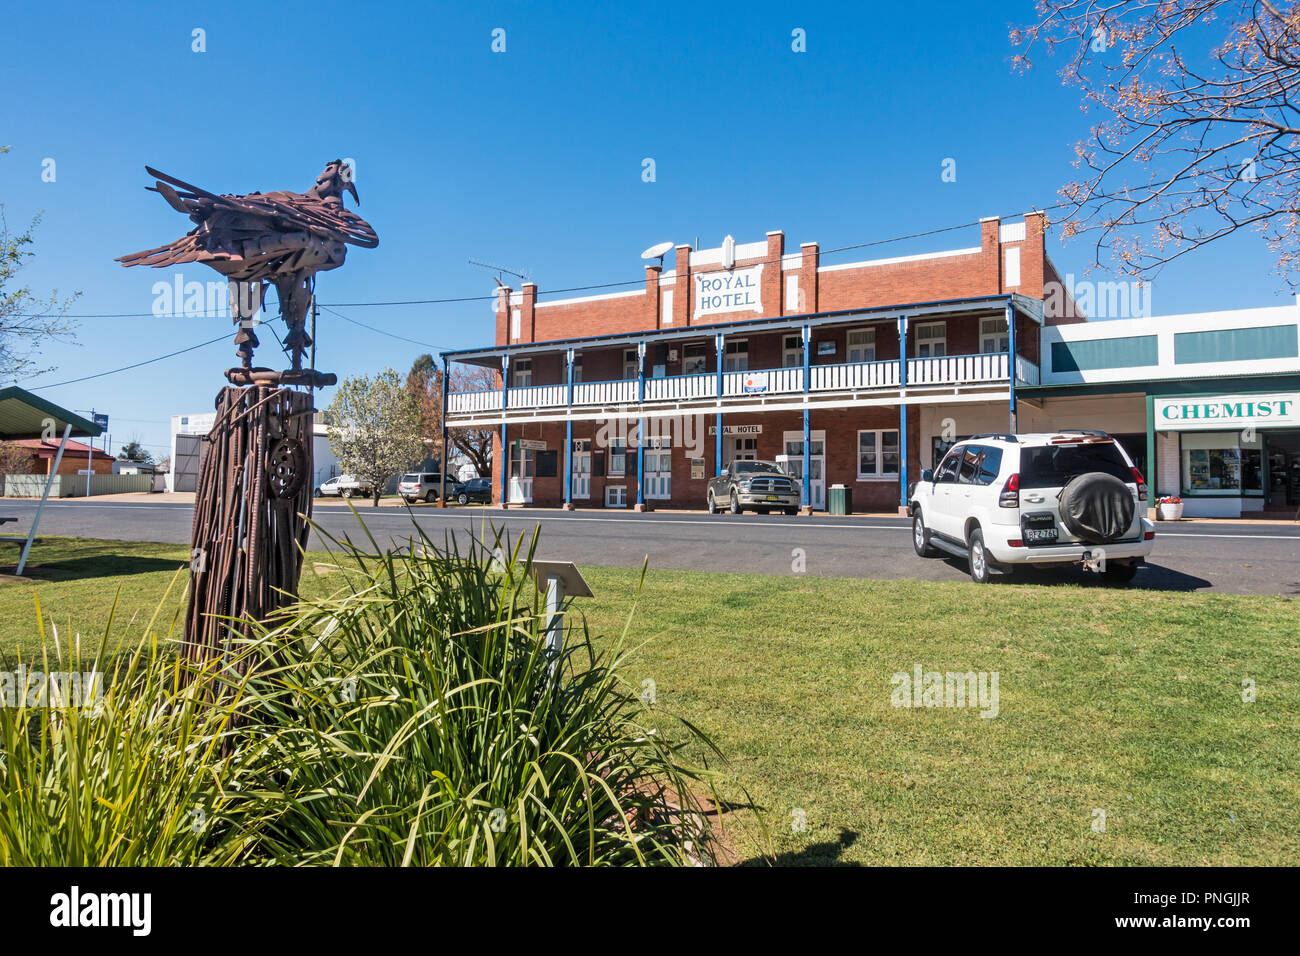 Royal Hotel, Dunedoo, Central West NSW Australien mit Metall Skulptur eines Adlers im Vordergrund. Stockfoto